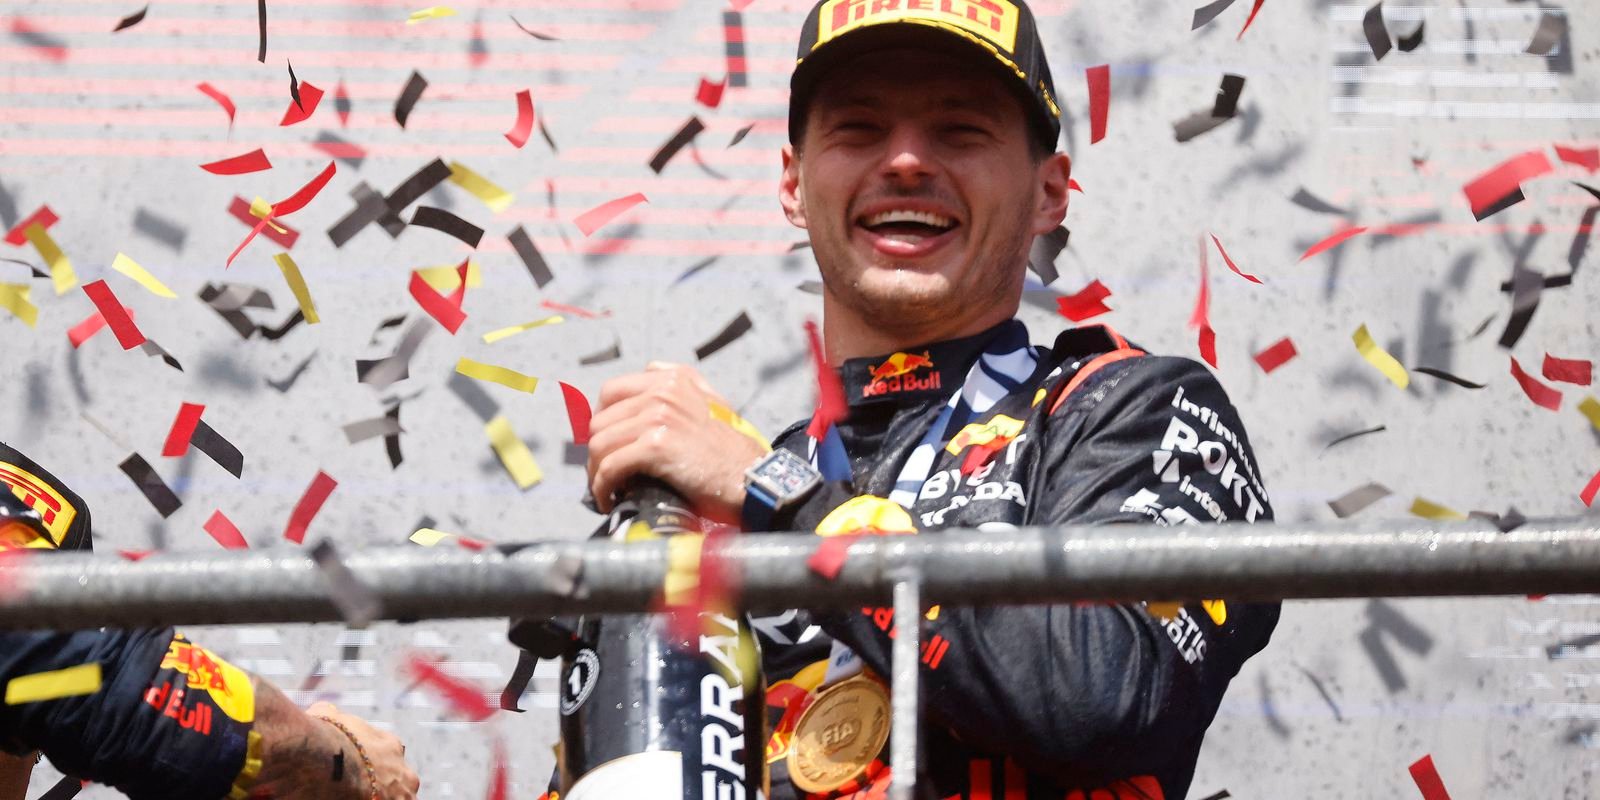 Líder do campeonato, Verstappen conquista 8ª vitória consecutiva na F1